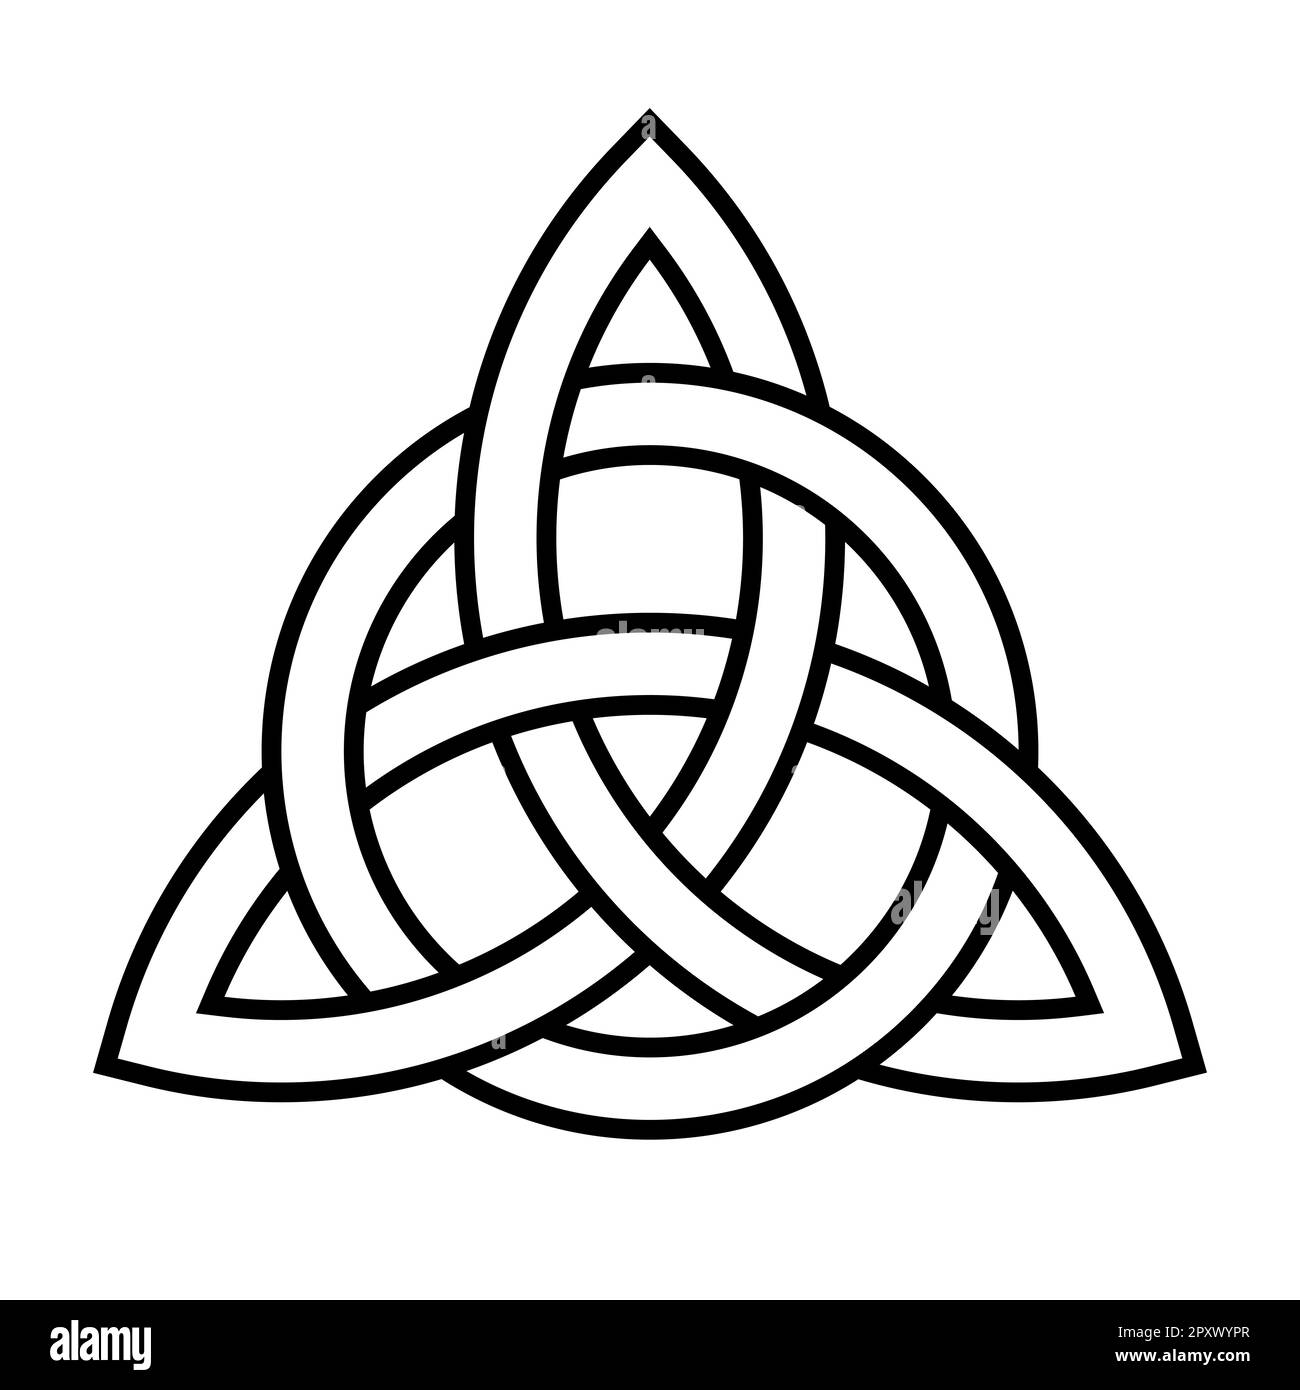 Small Family of Four Unity Symbol Temporary Tattoo set of 3 - Etsy